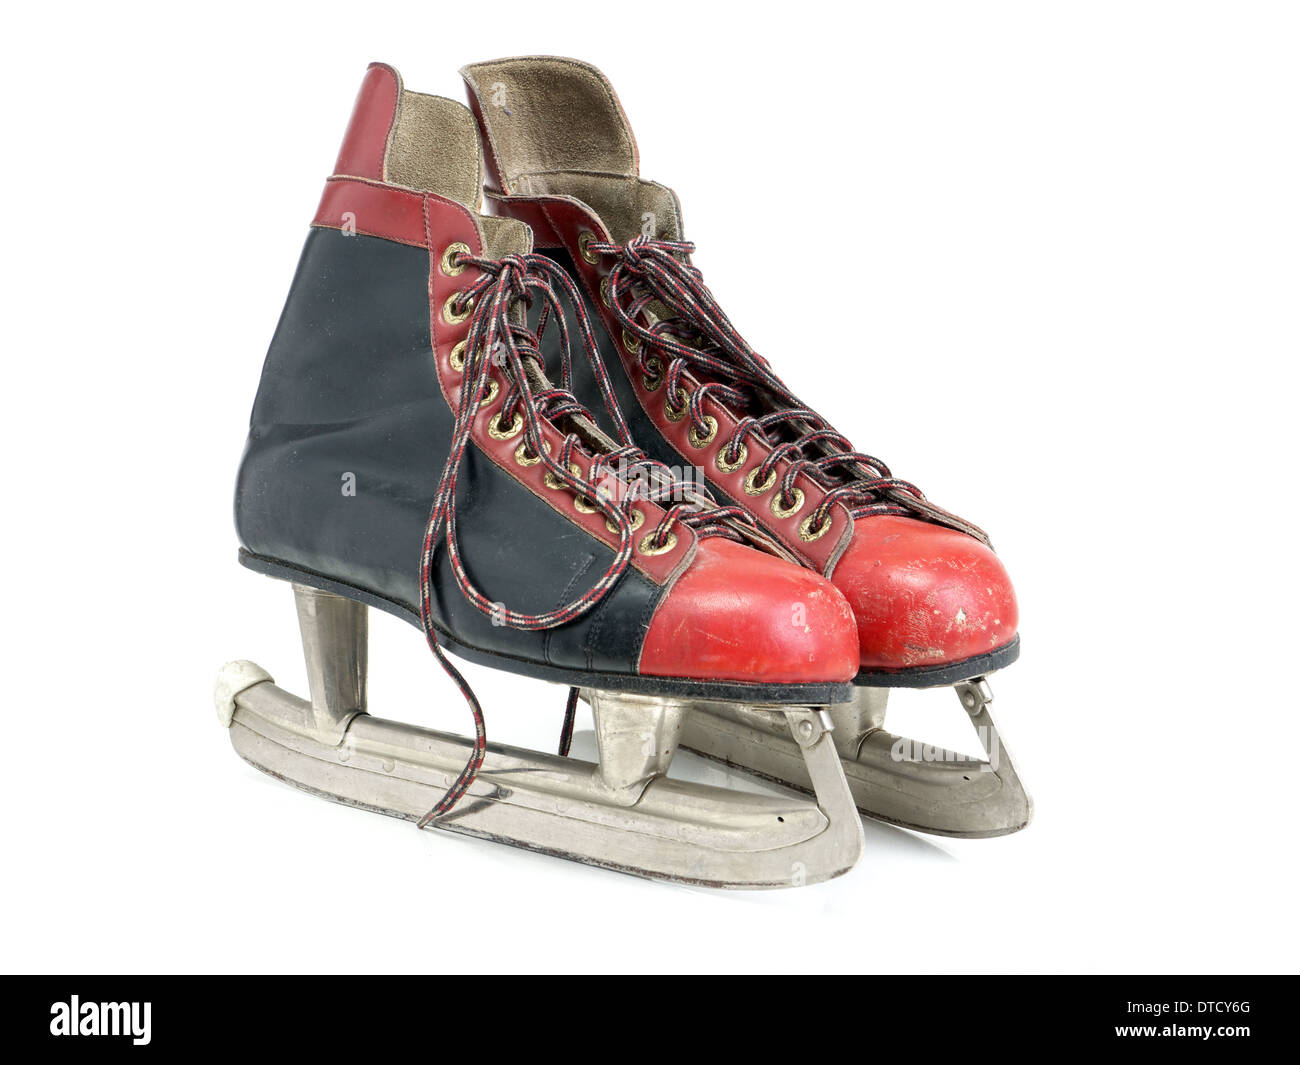 Noir et rouge vieux patins tourné sur fond blanc Banque D'Images